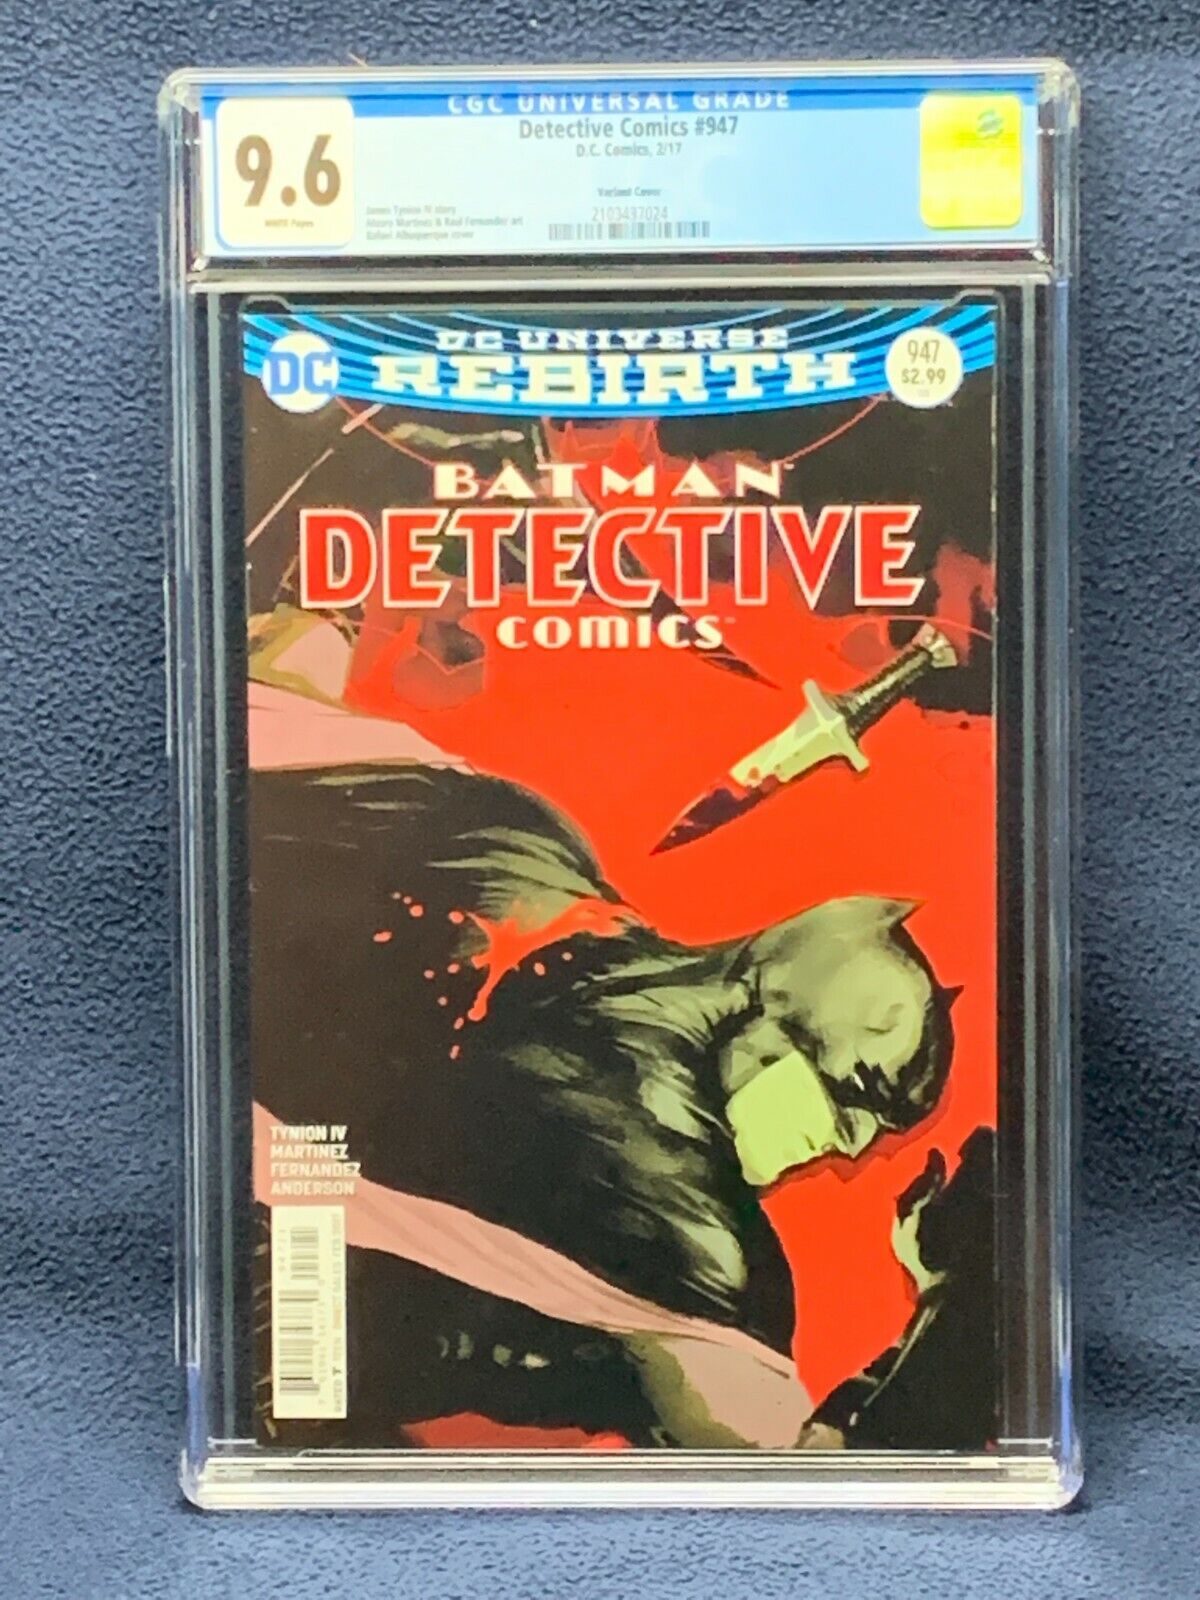 Detective Comics #947 Vol 3 Comic Book - CGC 9.6 - Variant